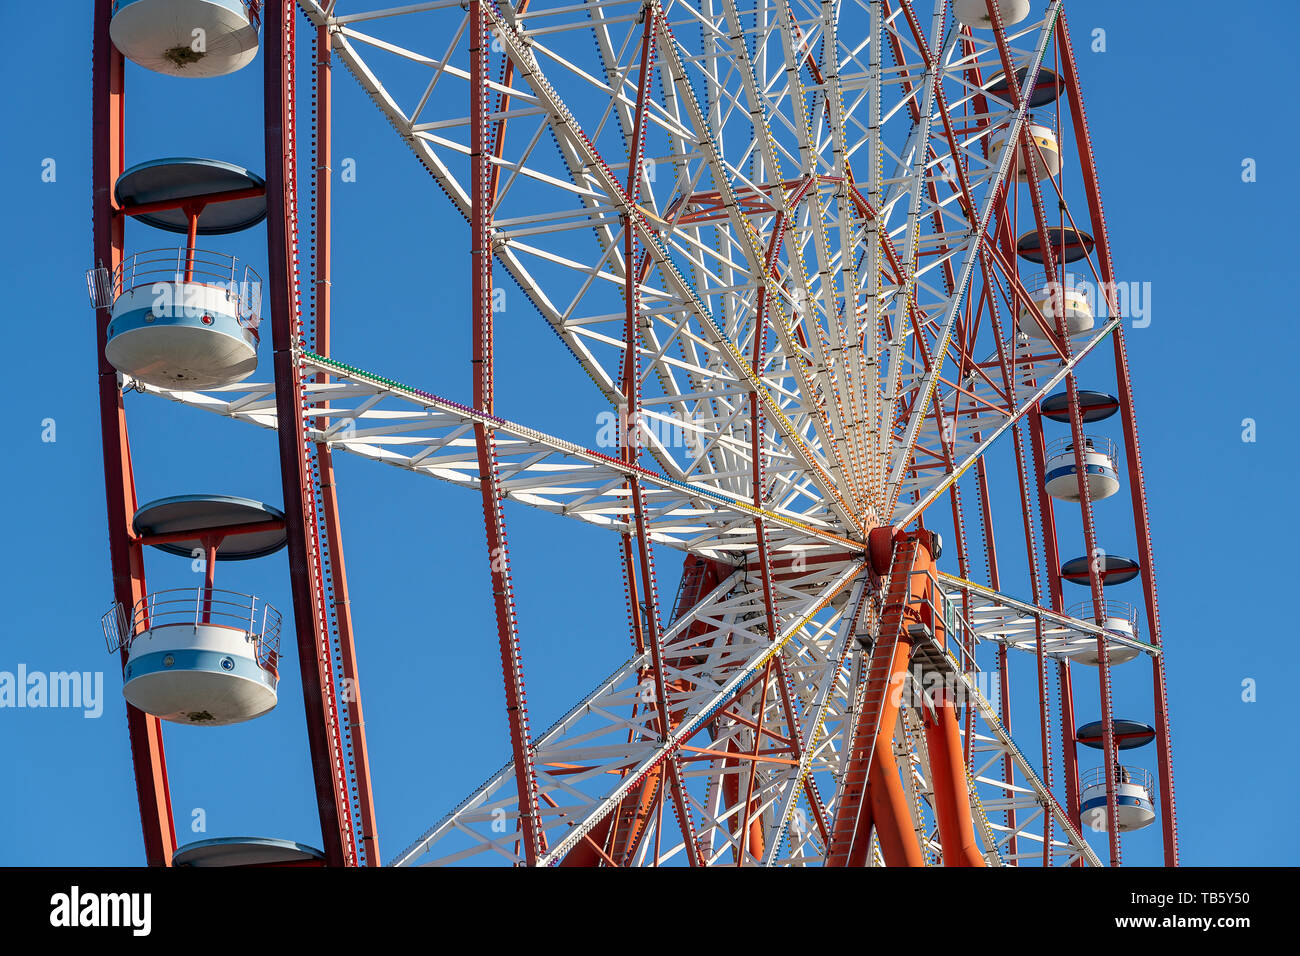 Détail d'une roue de Ferris sur fond de ciel bleu Banque D'Images